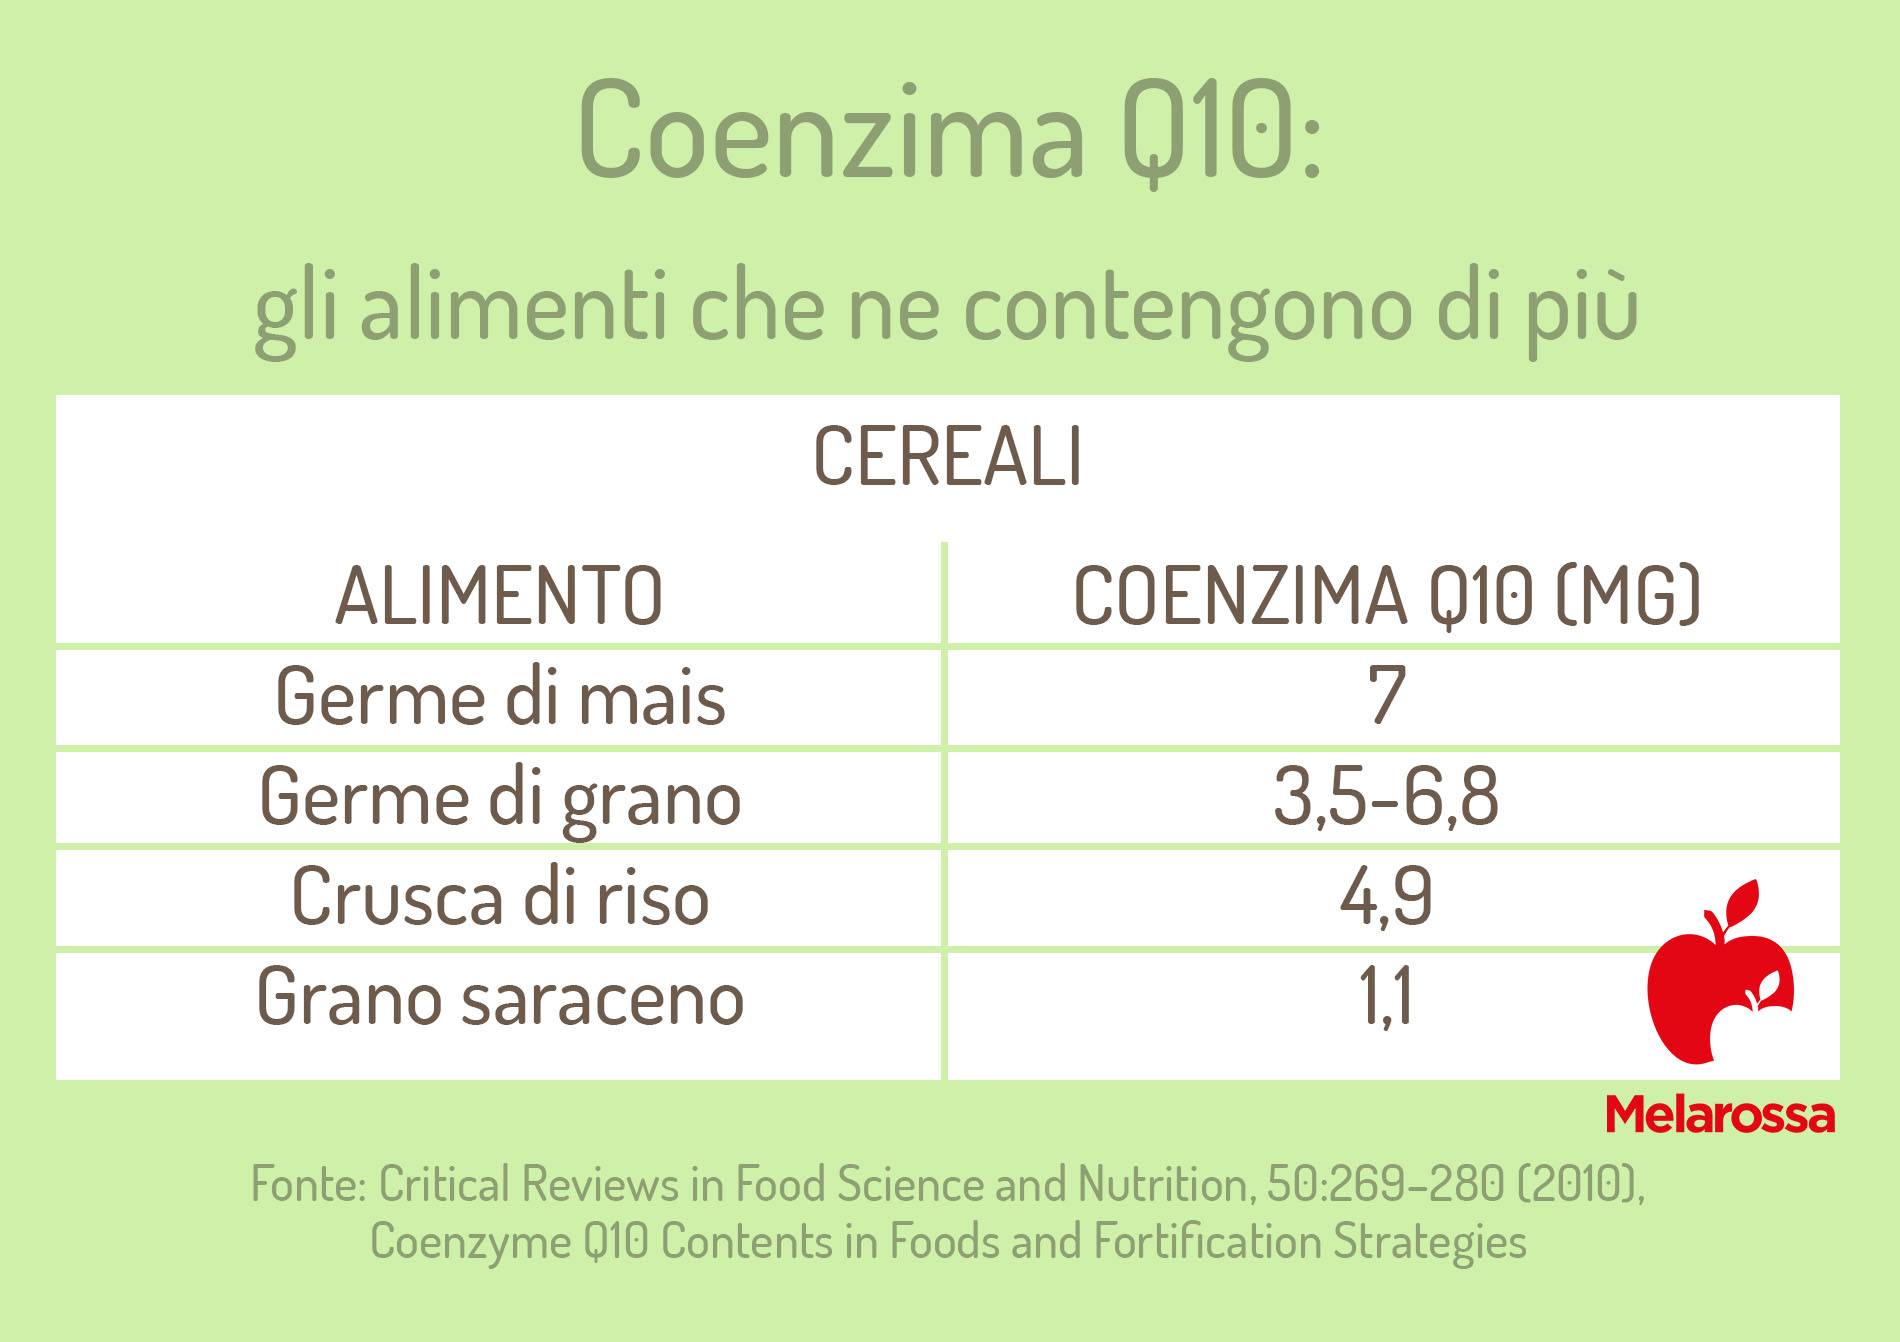 Coenzima Q10: cereali che ne contengono di più